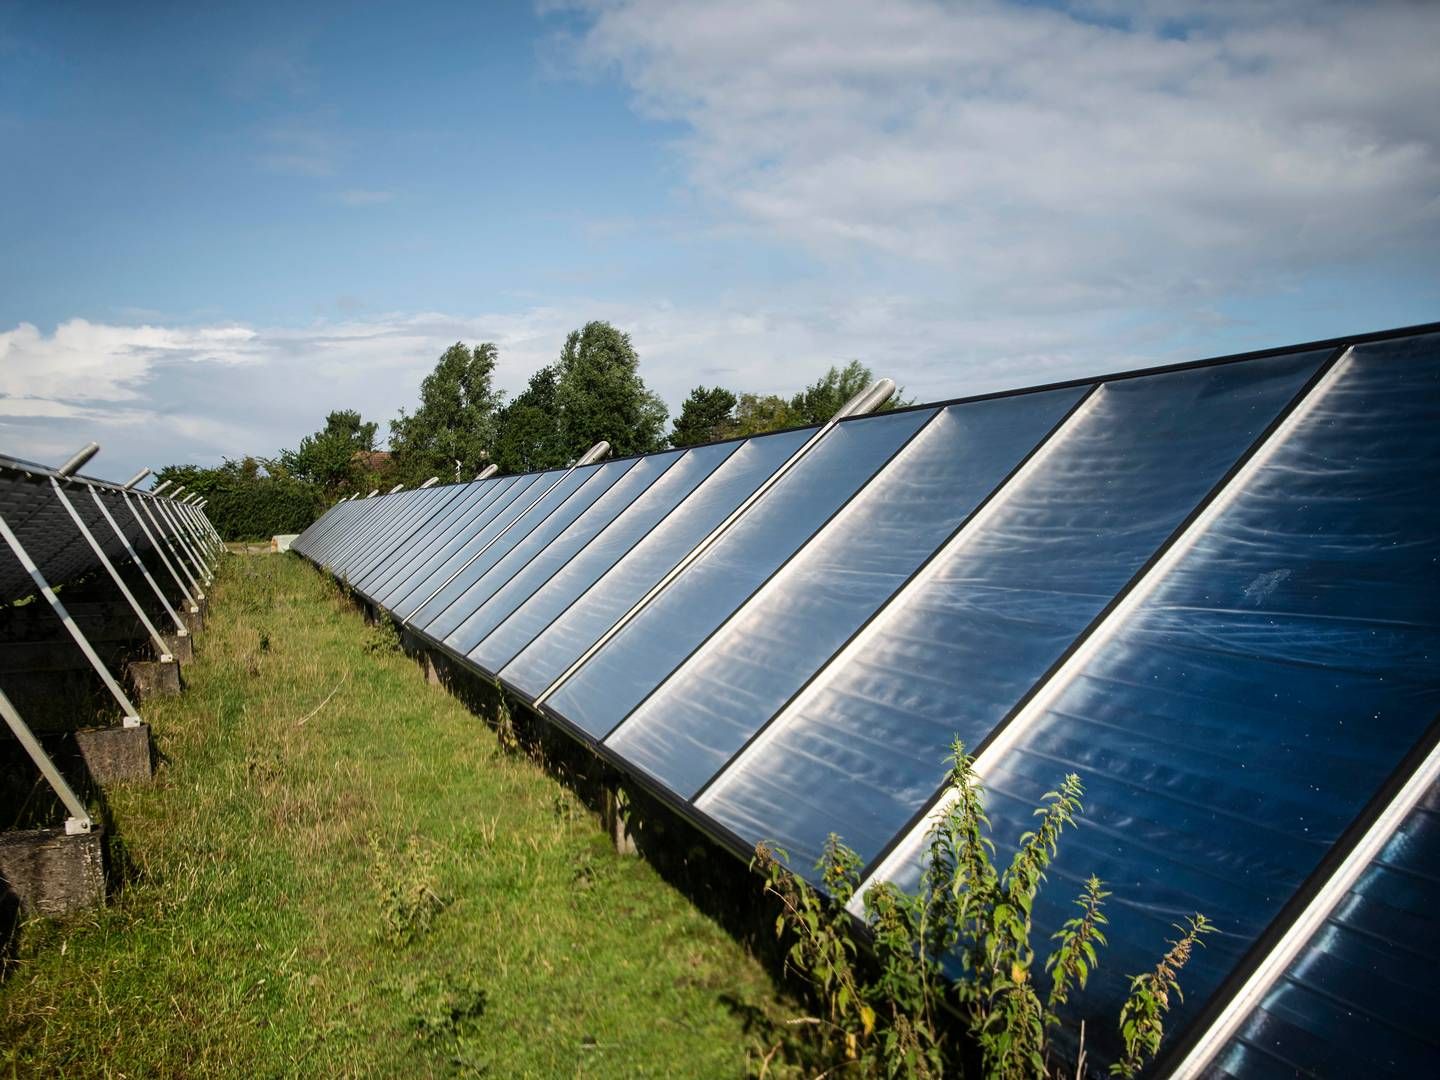 Nye sol- og vindmølleparker skal være med til at nå ambitionen om at firedoble produktionen fra vedvarende energi frem mod 2030. | Foto: Tim Kildeborg Jensen